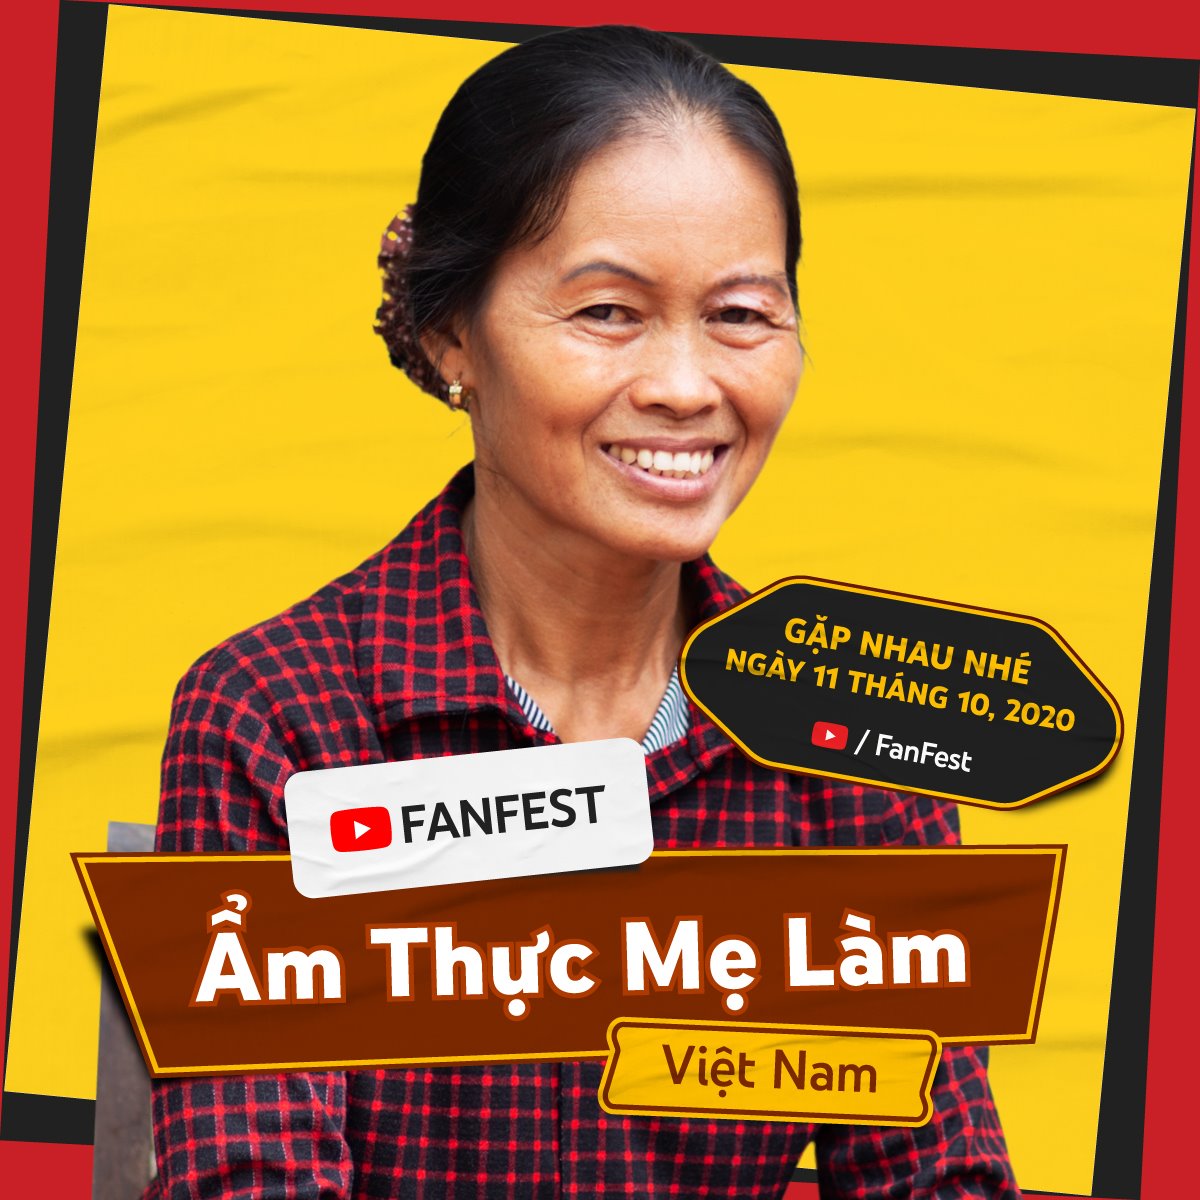 "Ẩm thực mẹ làm" là một trong những kênh YouTube của Việt Nam được mời tham gia&nbsp;YouTube Fanfest 2020